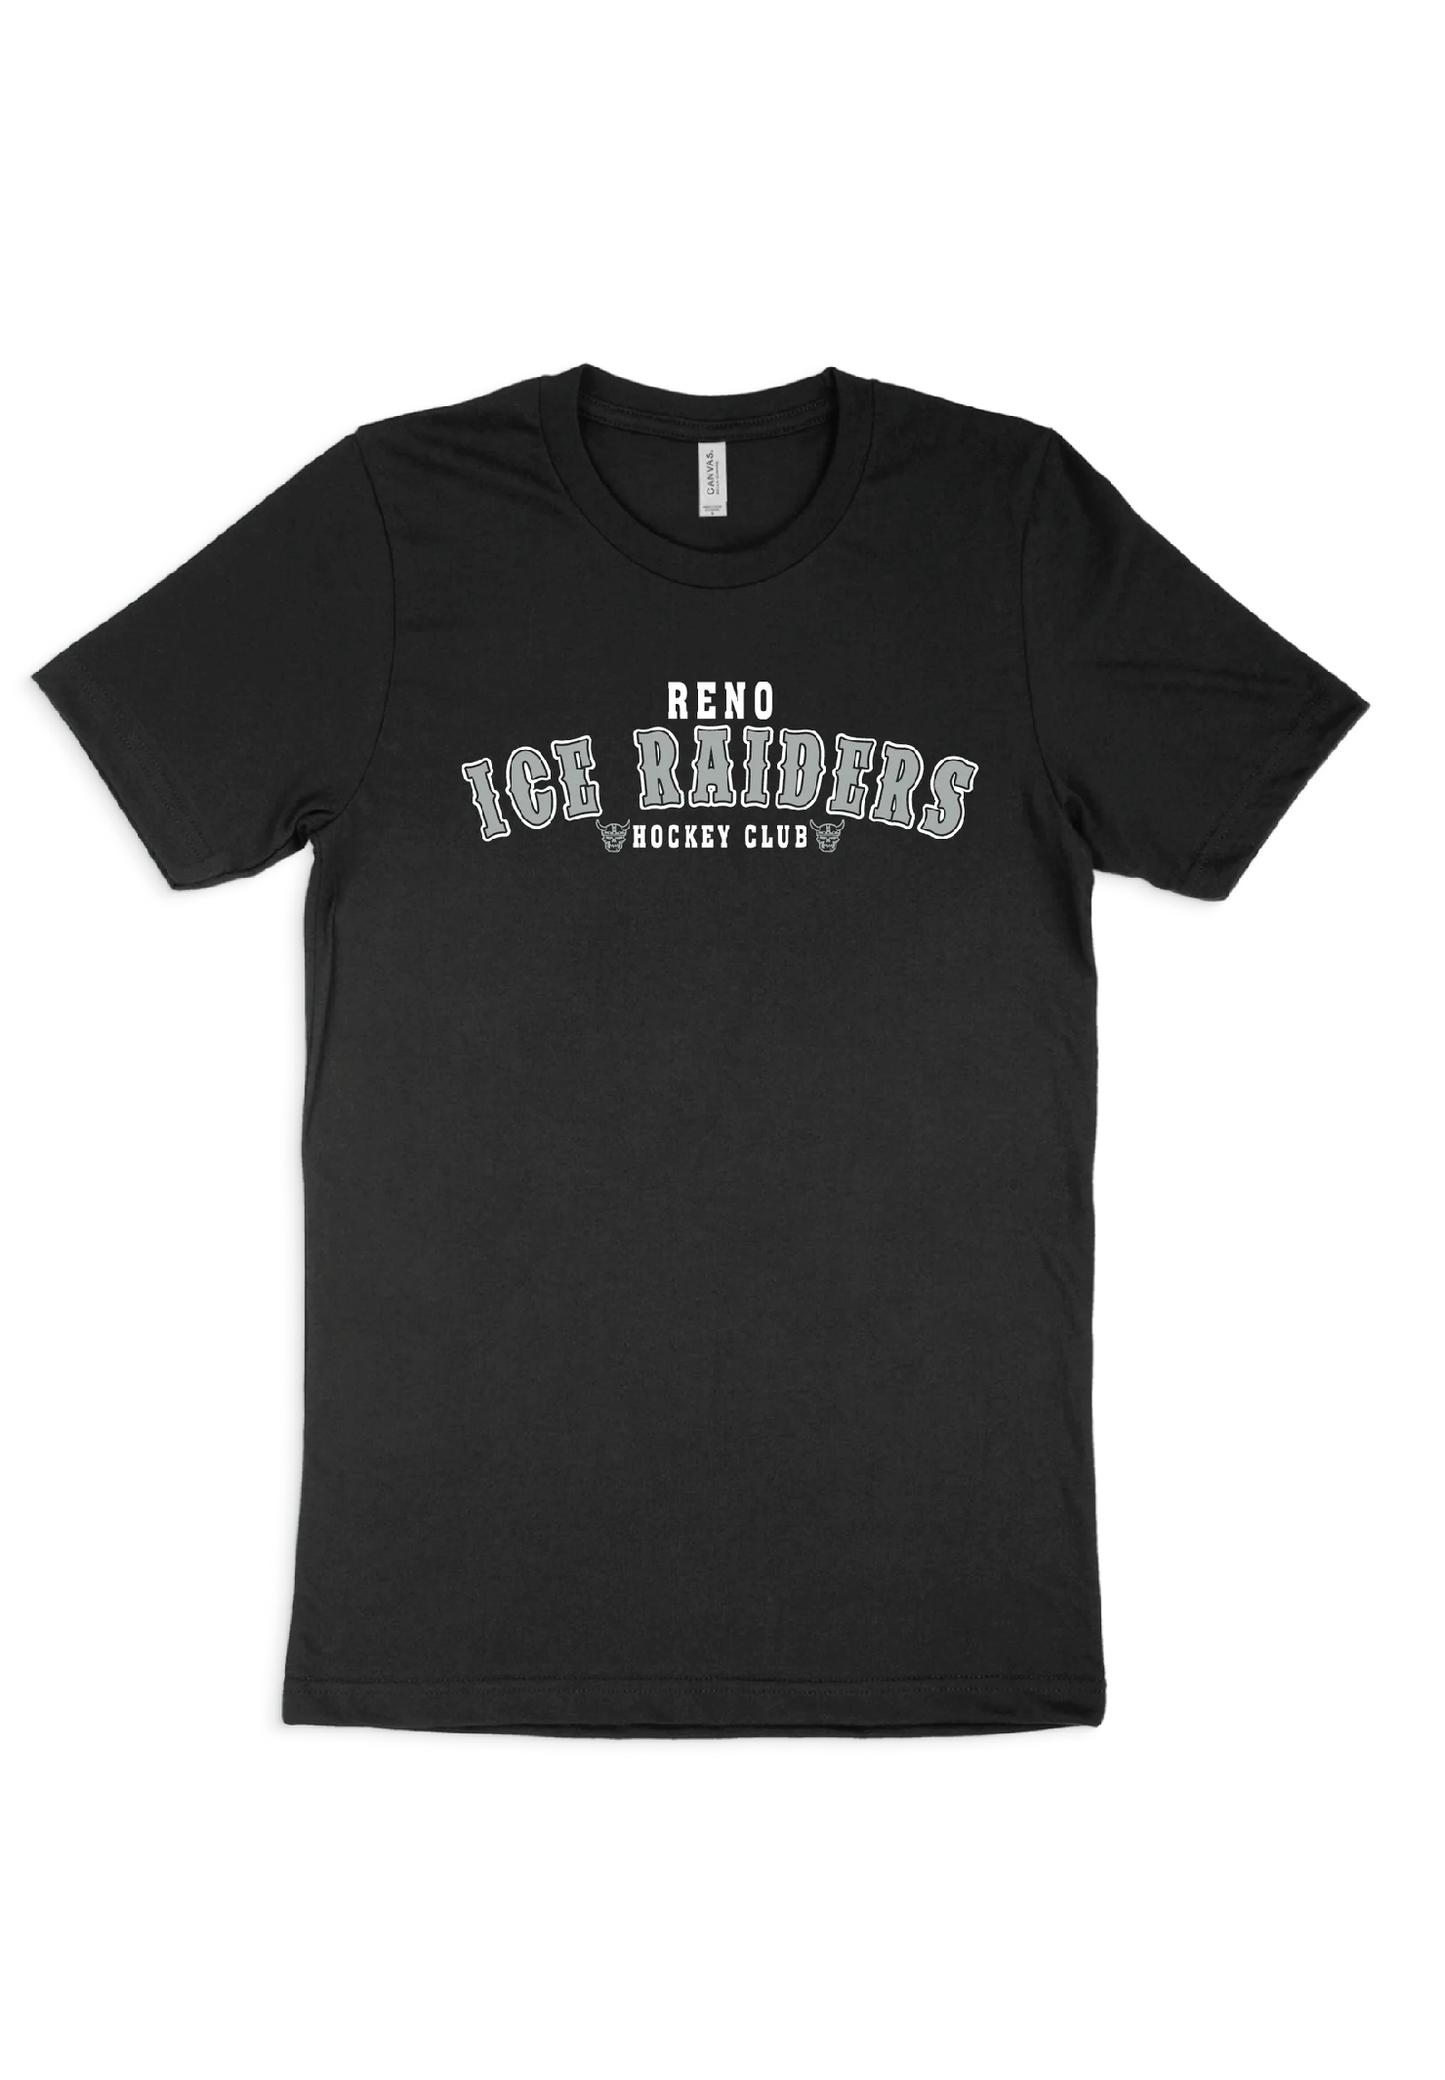 Ice Raiders Hockey Club Shirt